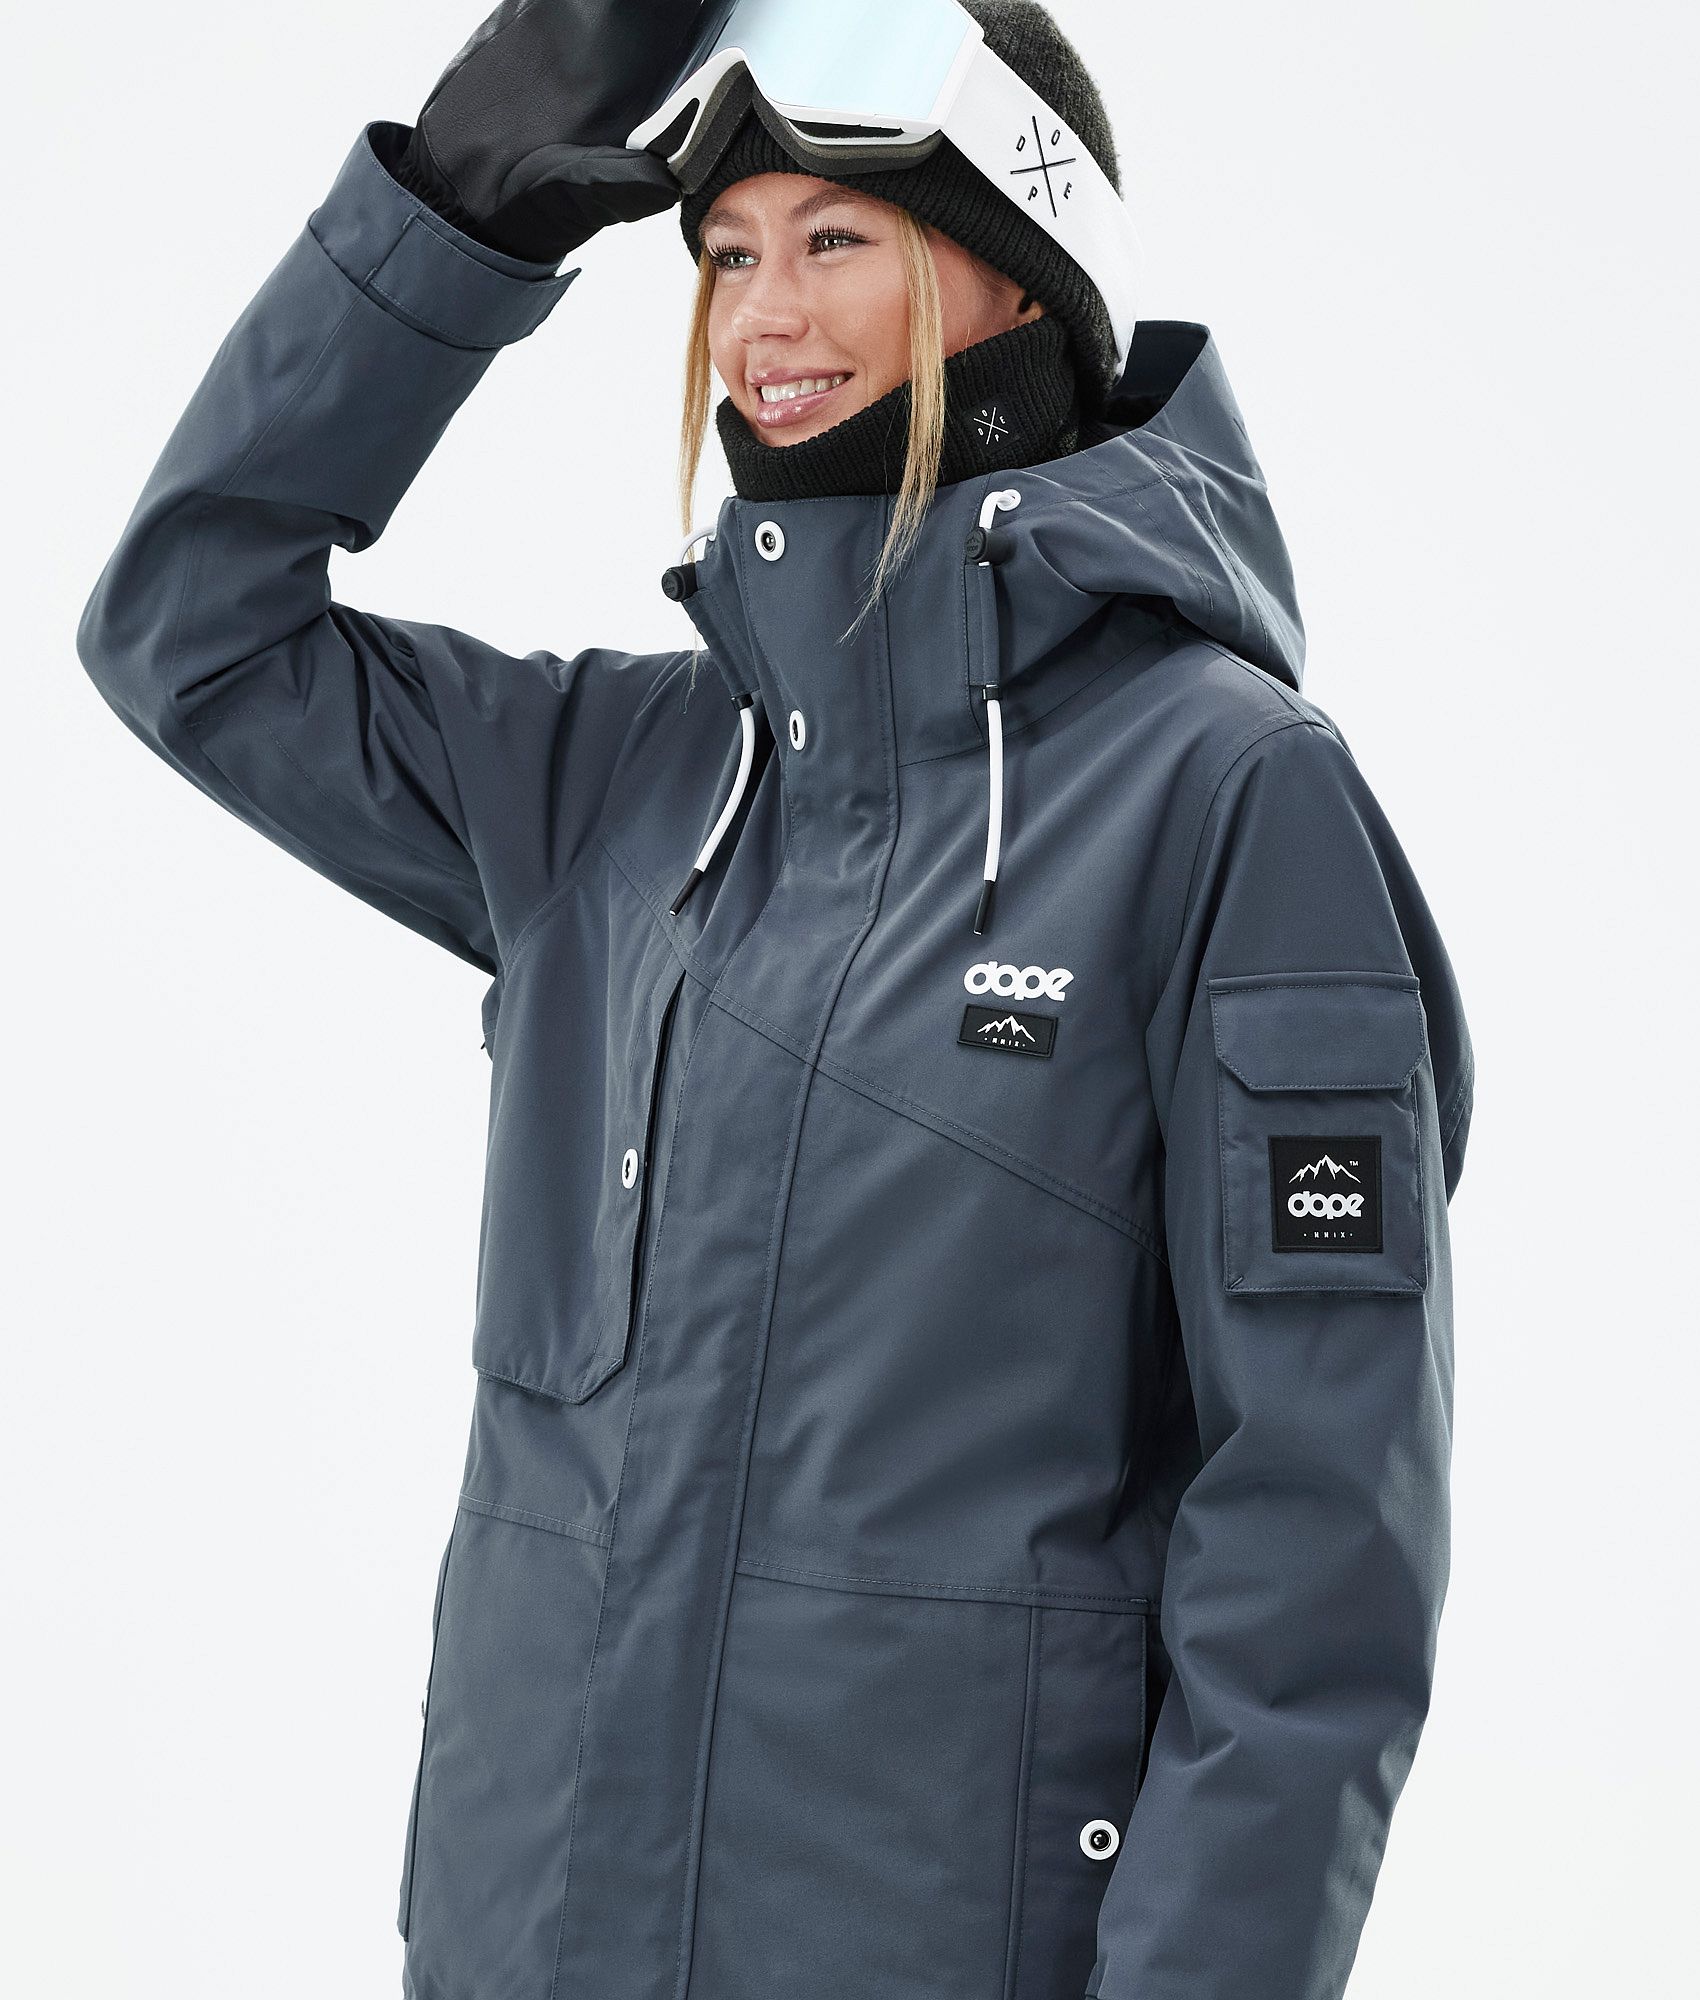 税込) Snowboard Ladies Dope jacket: W Adept ウエア/装備(女性用 